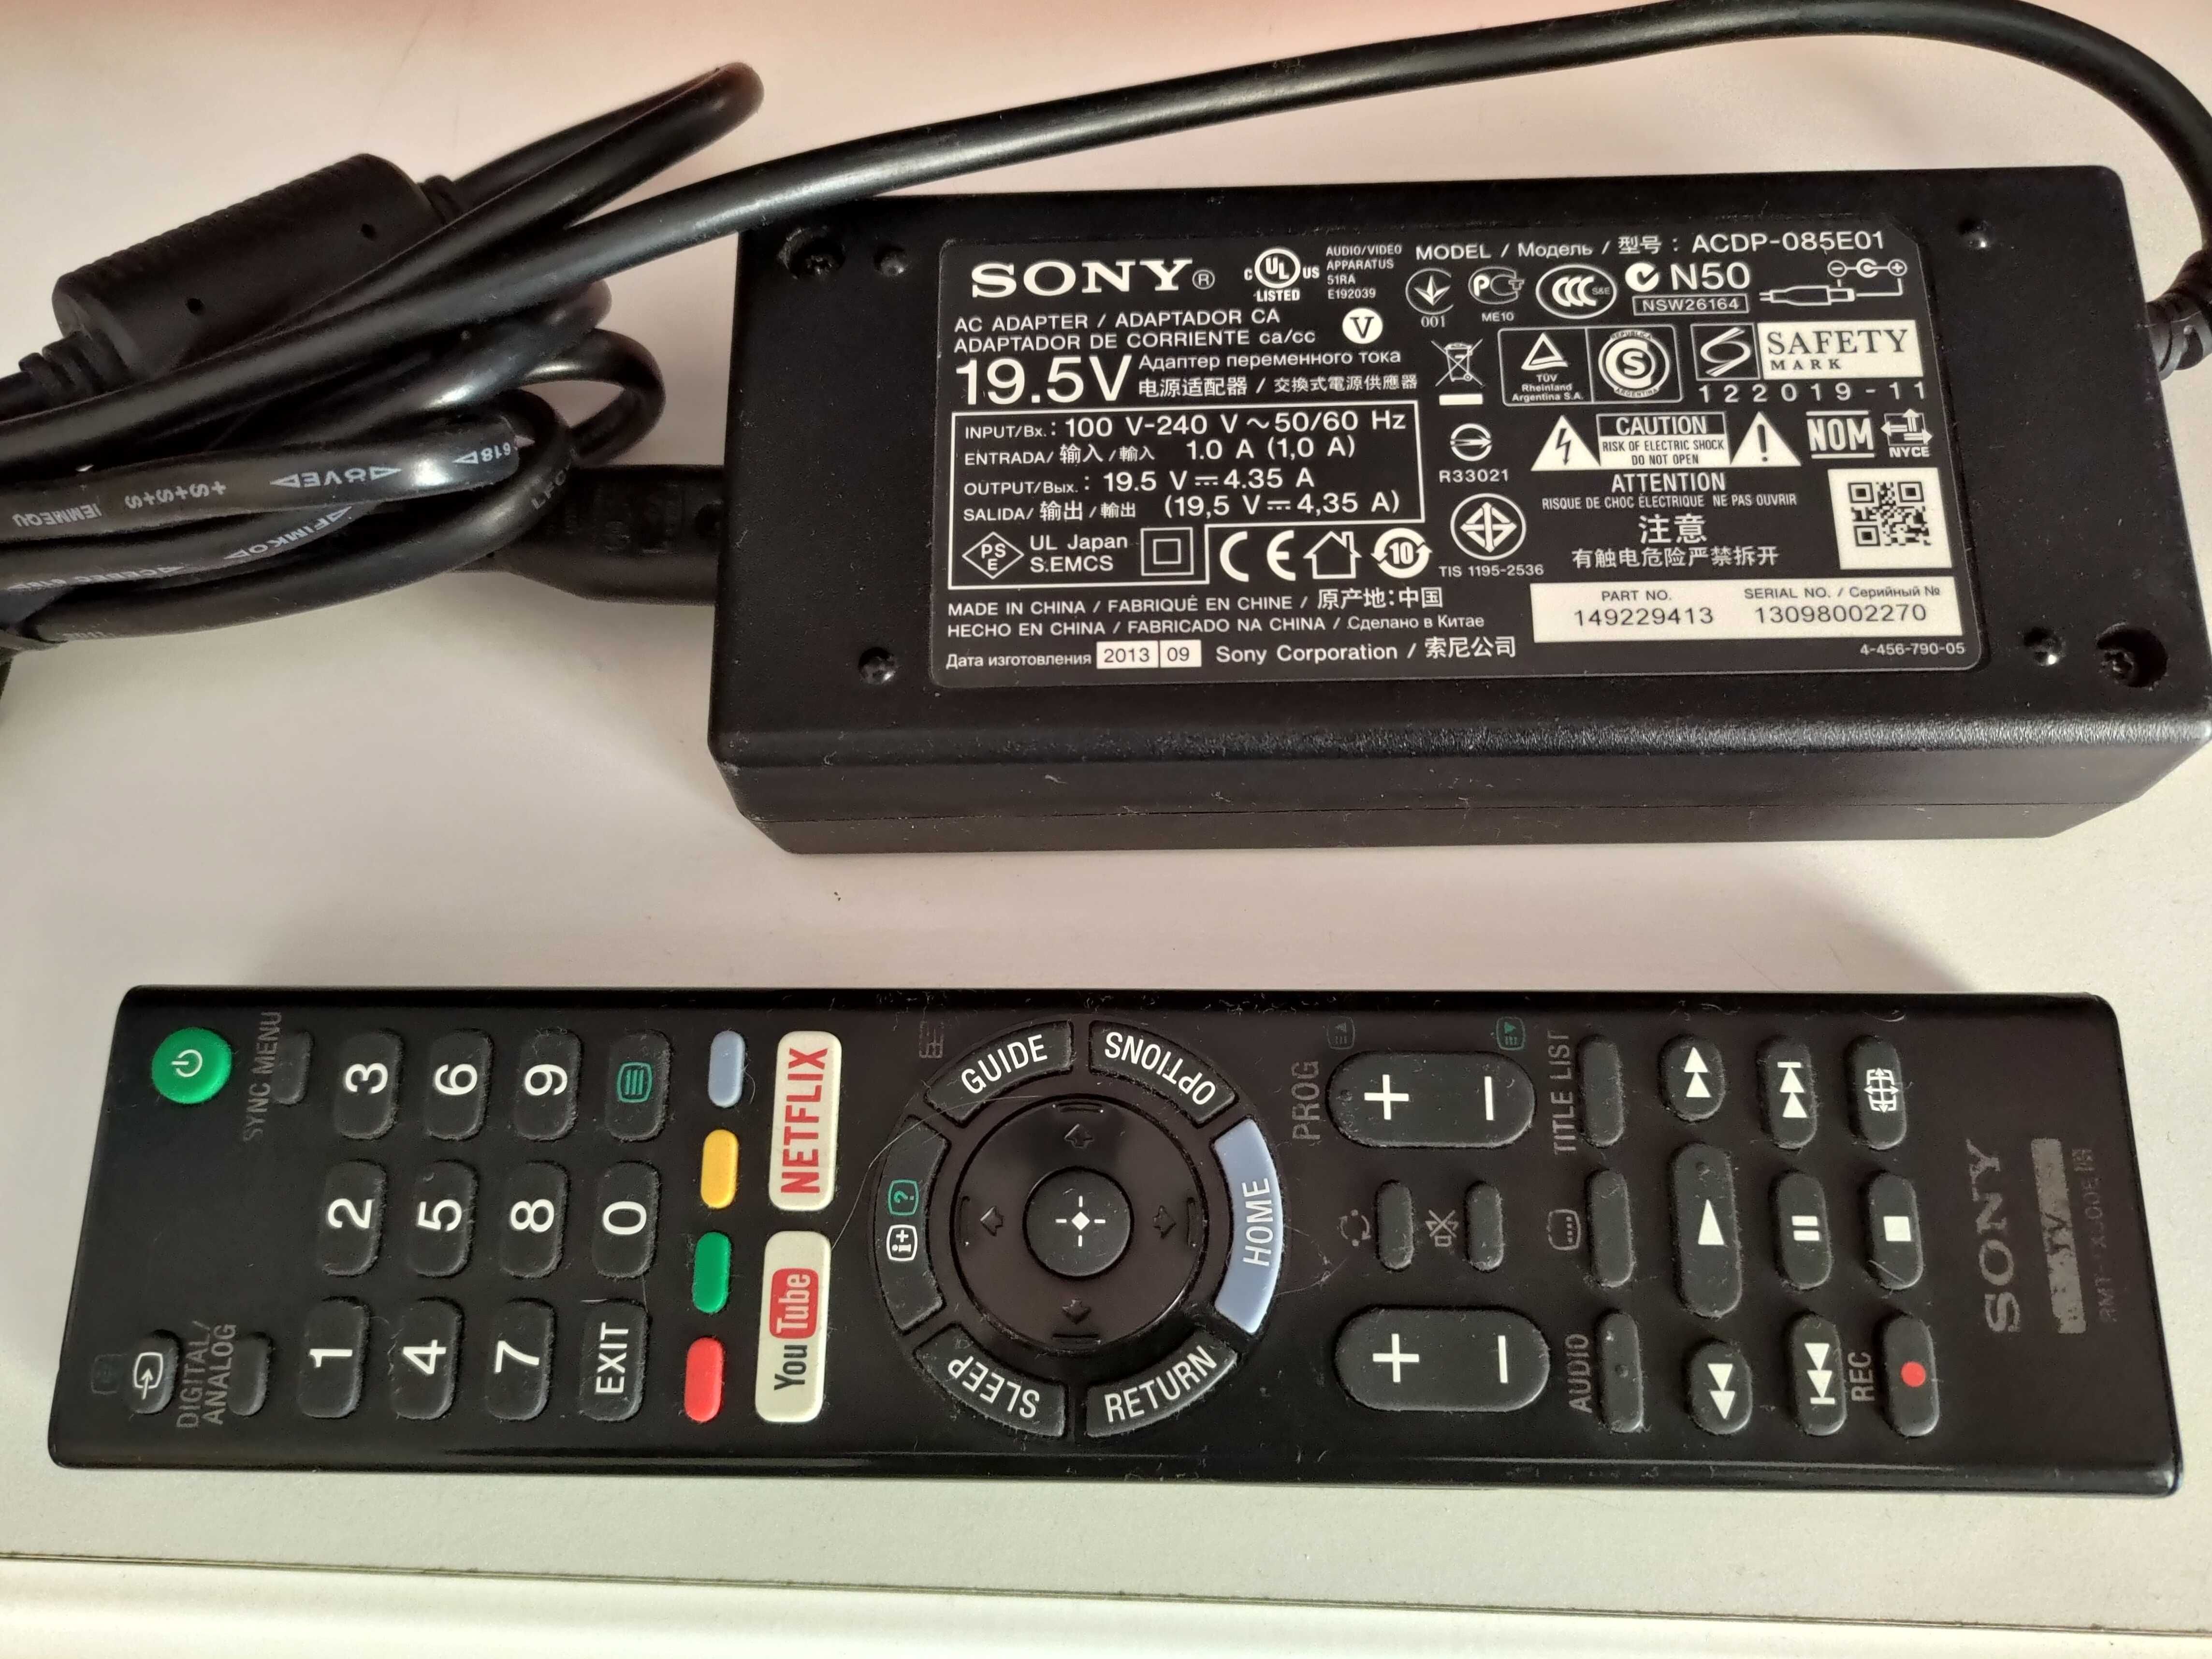 Sony 49" model KDL-49WE665, Full HD / 1920 x 1080, Wi-Fi, Smart TV